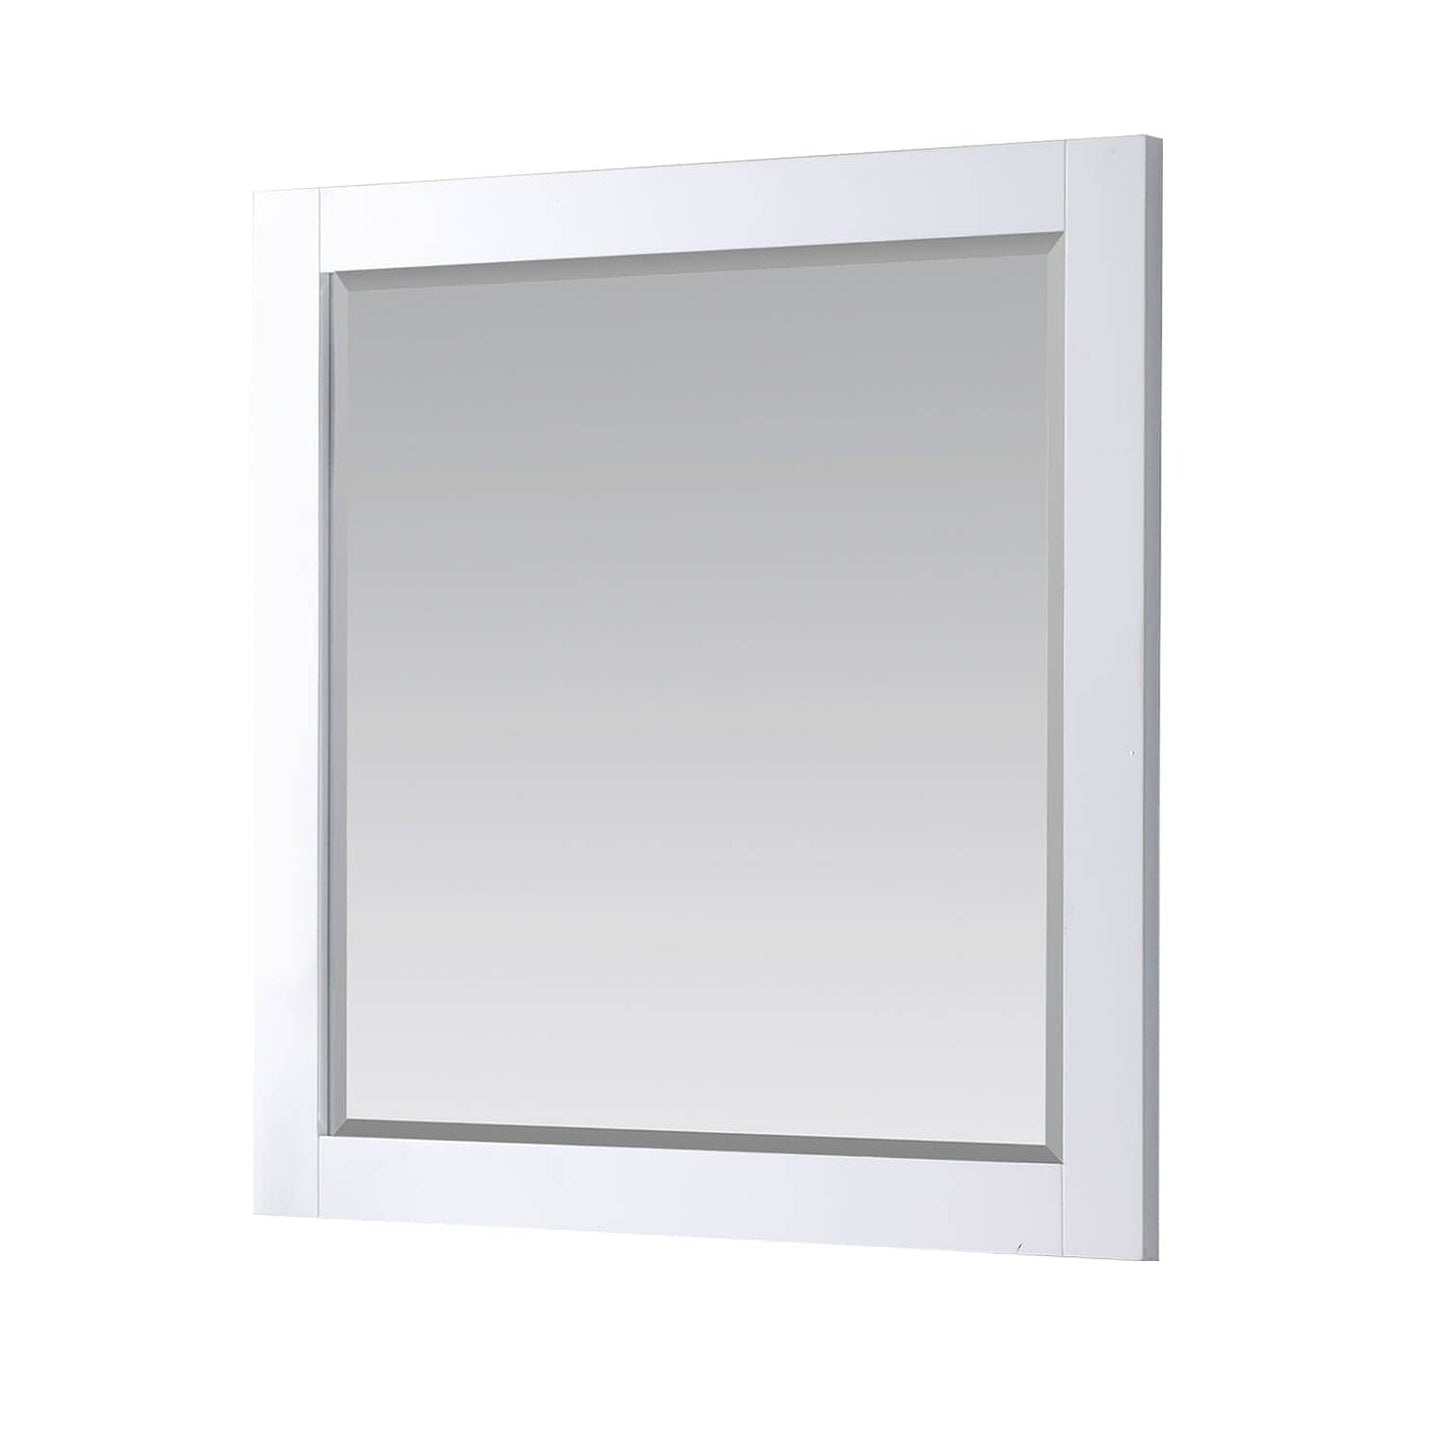 Bathroom Mirror - Altair Maribella 34W x 36H - 535030-MIR-WH